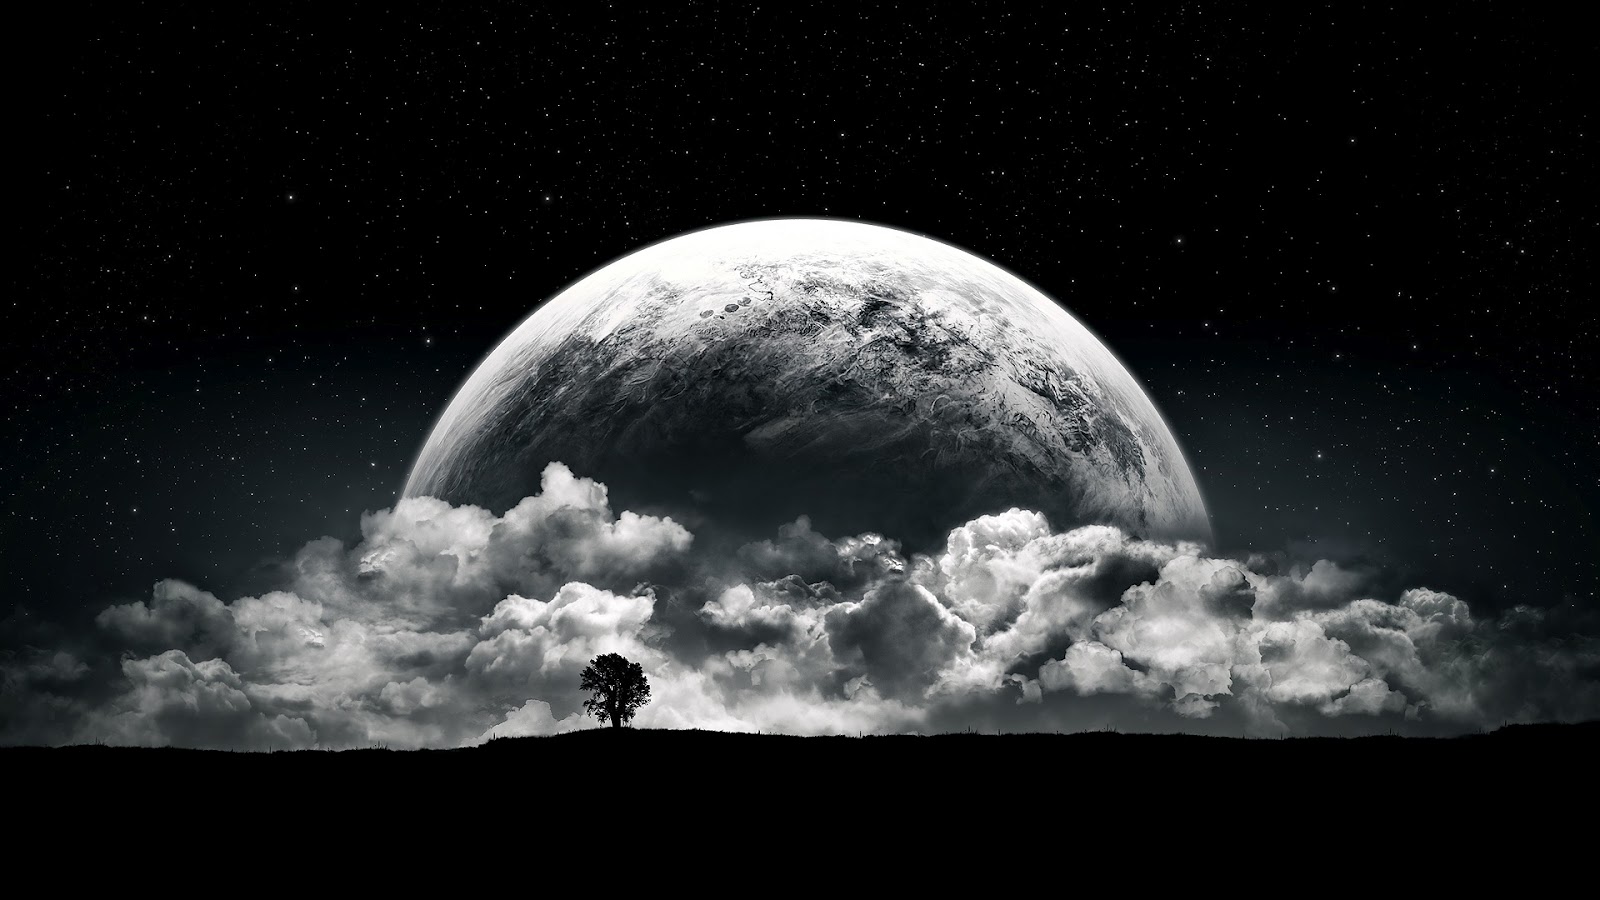 41+] HD Moon Wallpaper 1080p - WallpaperSafari